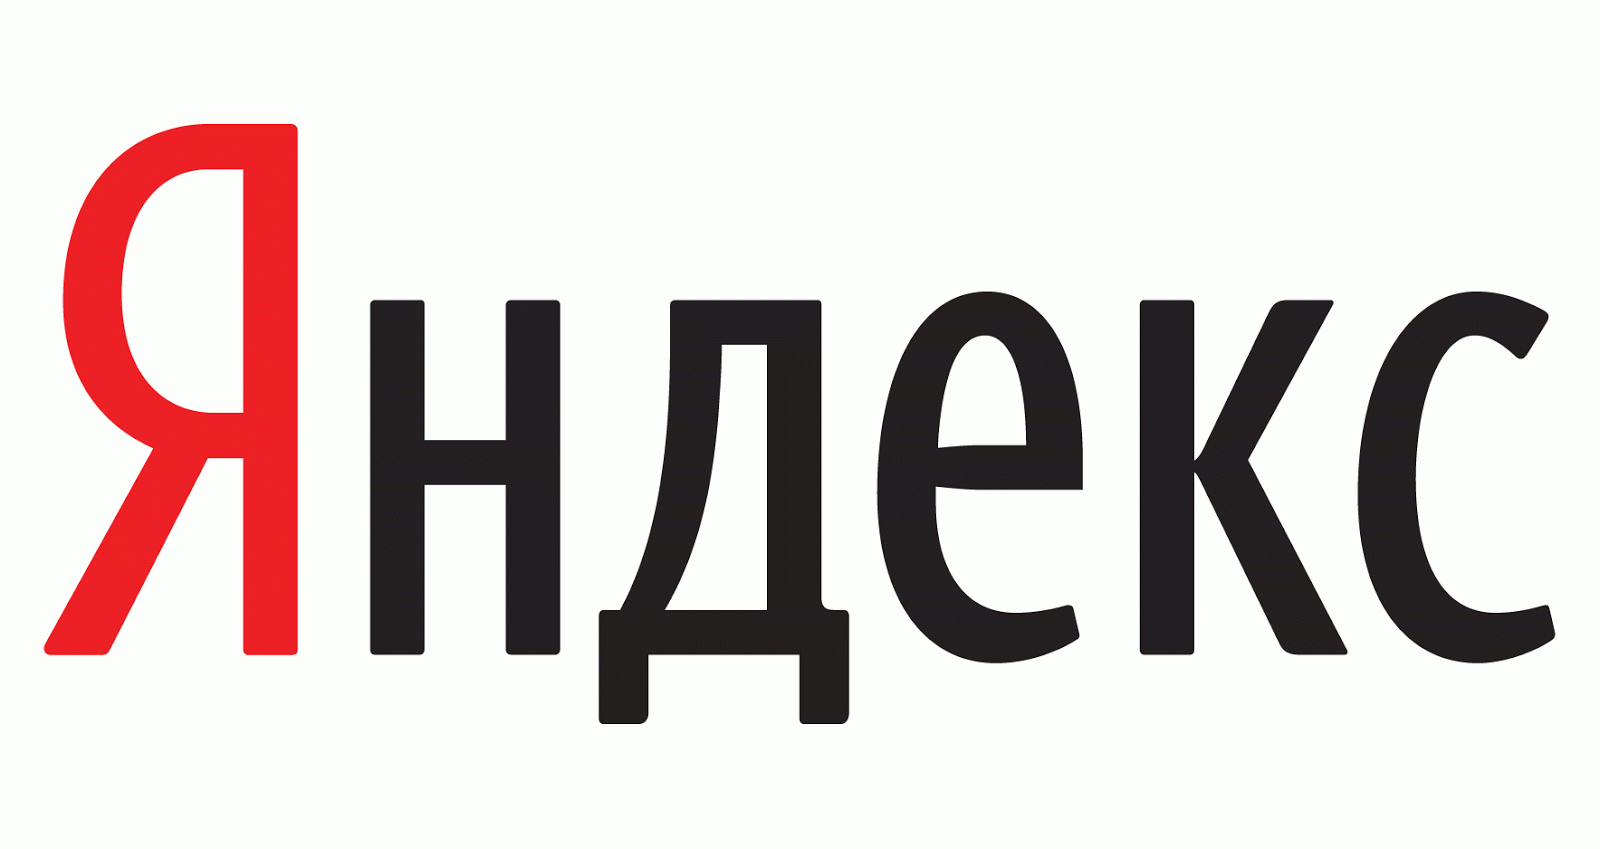 Yandex.ru Search Engine